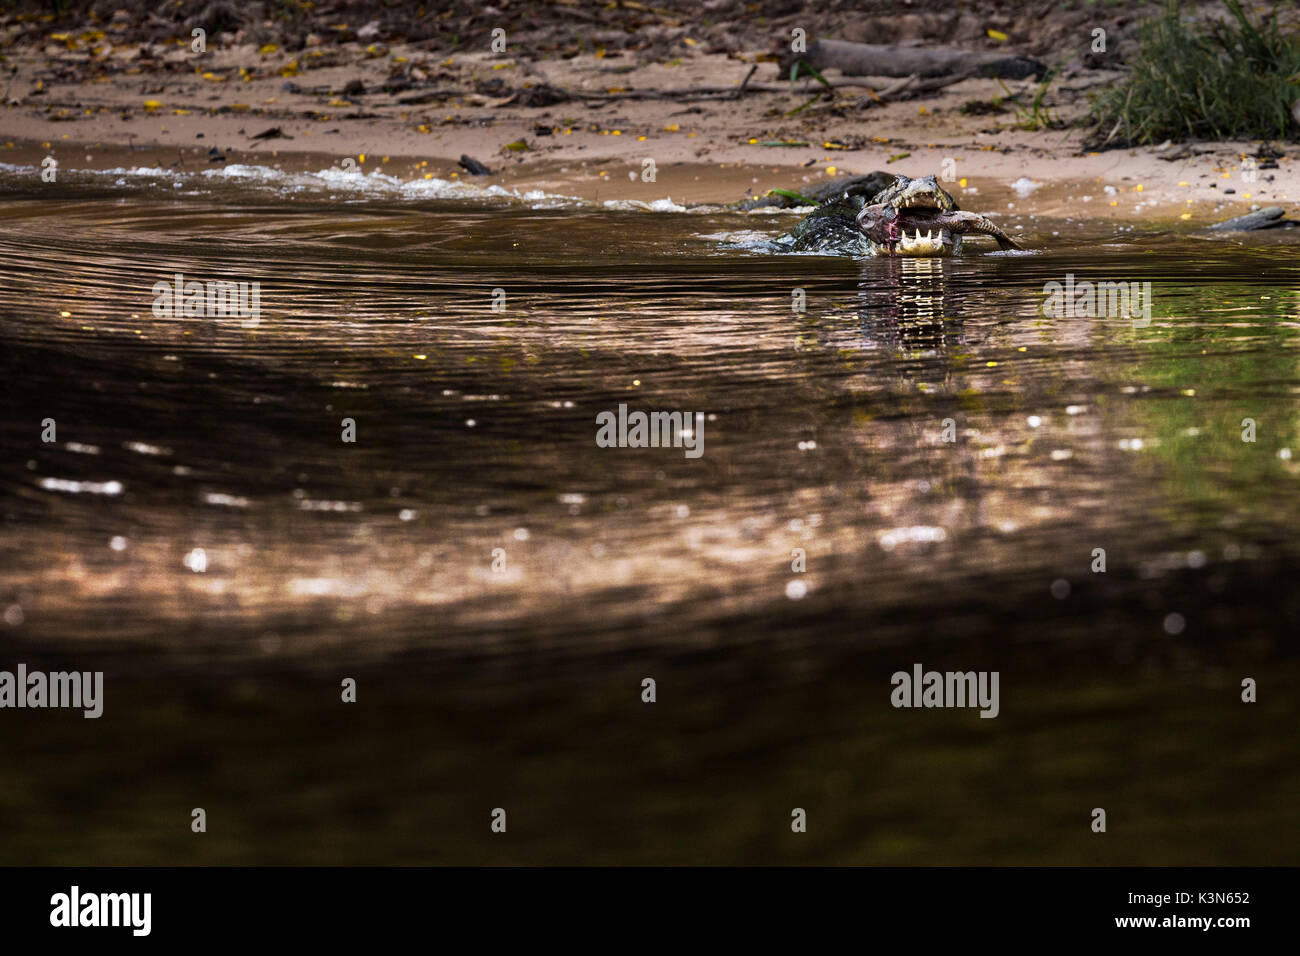 Caimano Yacare da rio cuibà, dove jaguar crociere safari prendere posto, con un enorme pesce nella sua bocca. Rio cuiabà, Mato Grosso do Sul; Pantanal; brasil Foto Stock